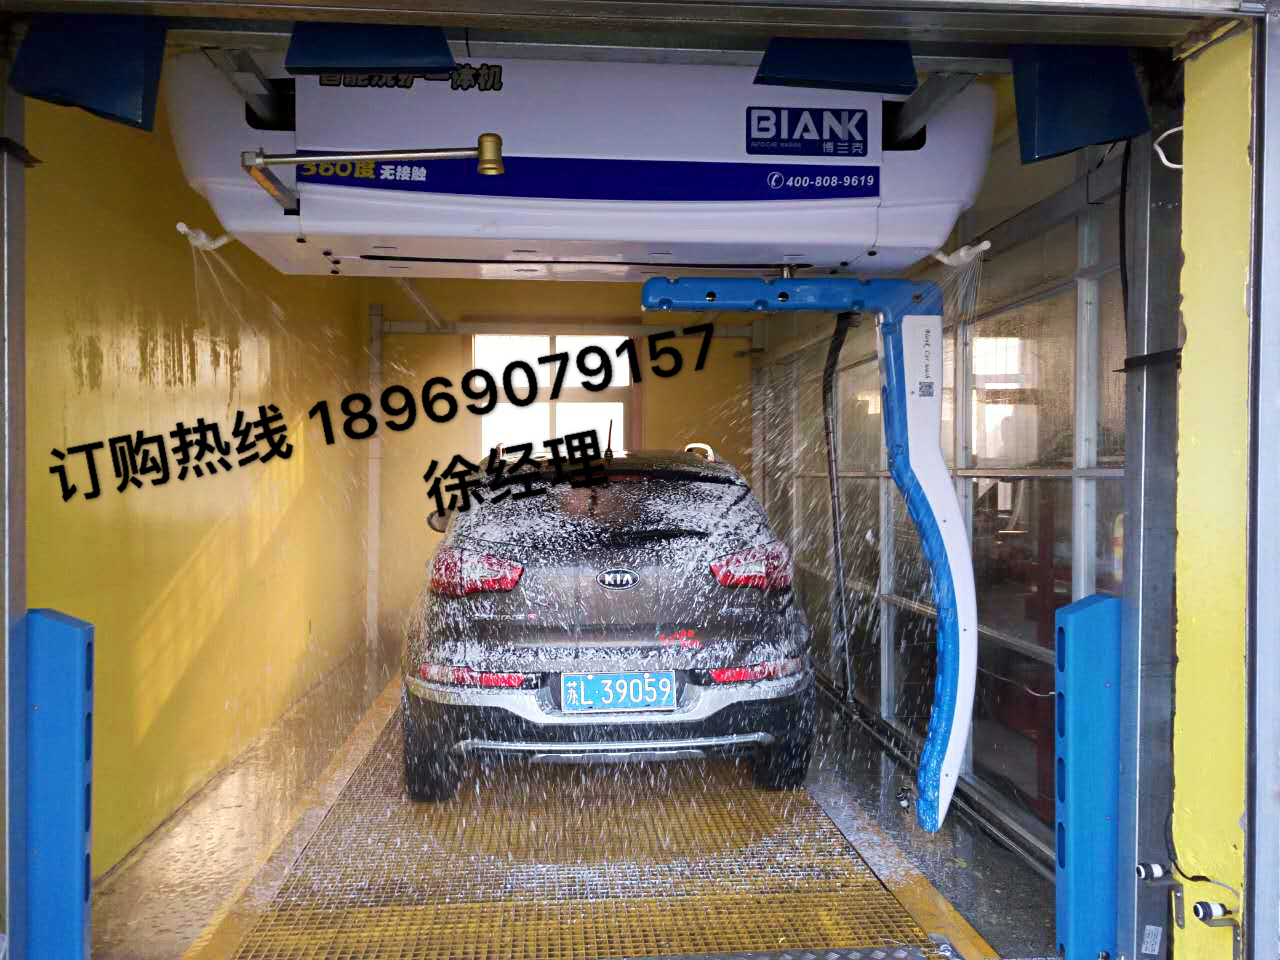 供应用于汽车清洗的洗车机品牌哪个好全自动洗车机品牌